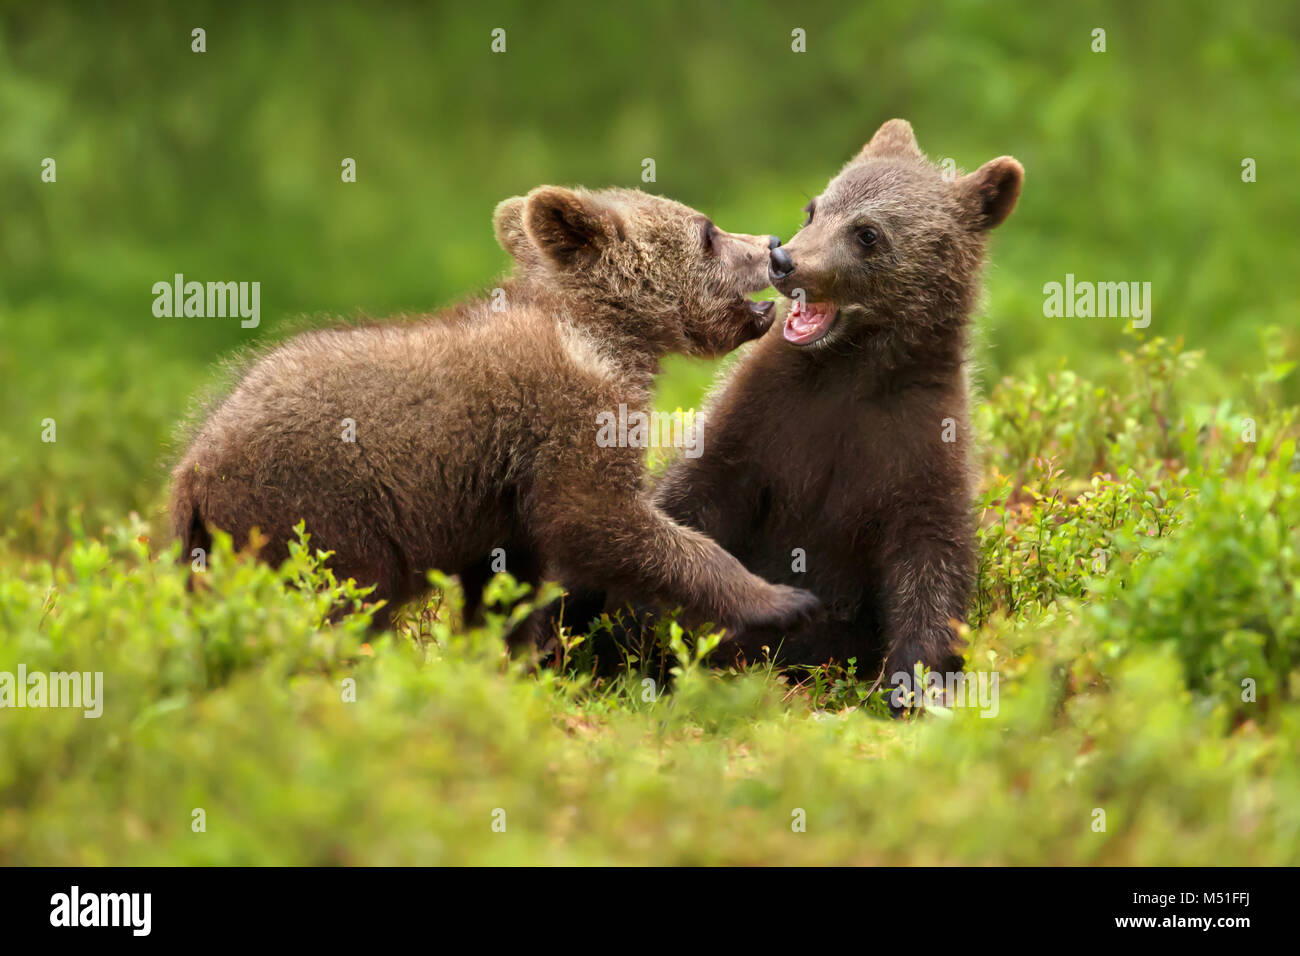 Zwei Brown bear Cubs spielen Kämpfen im Wald im Sommer, Finnland. Stockfoto